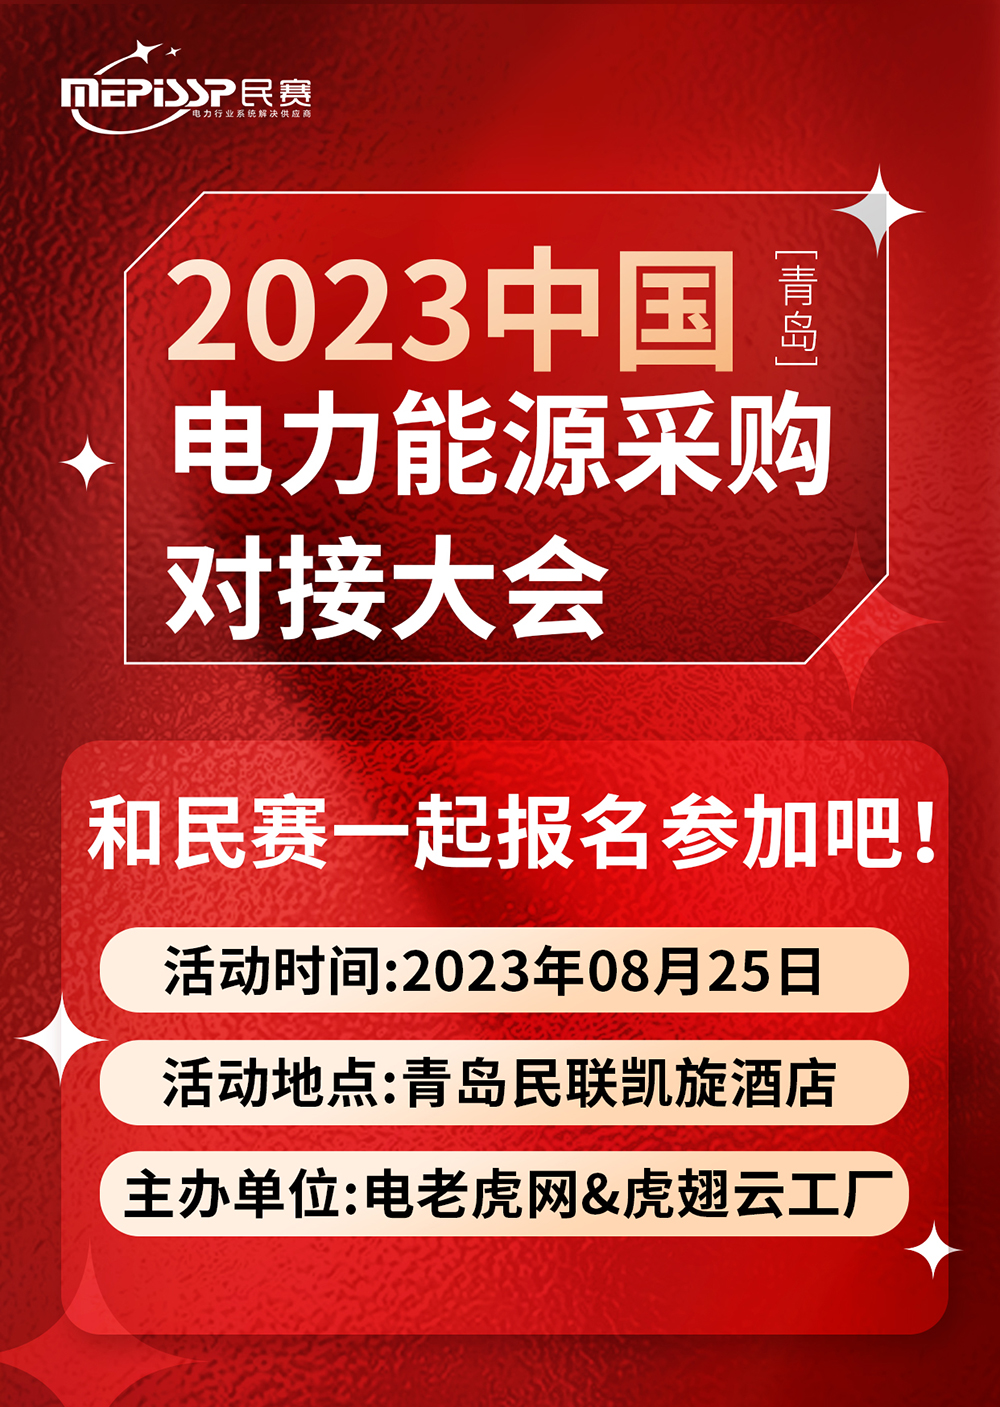 2023中国-青岛 电力能源采购对接大会和民赛一起参加吧！